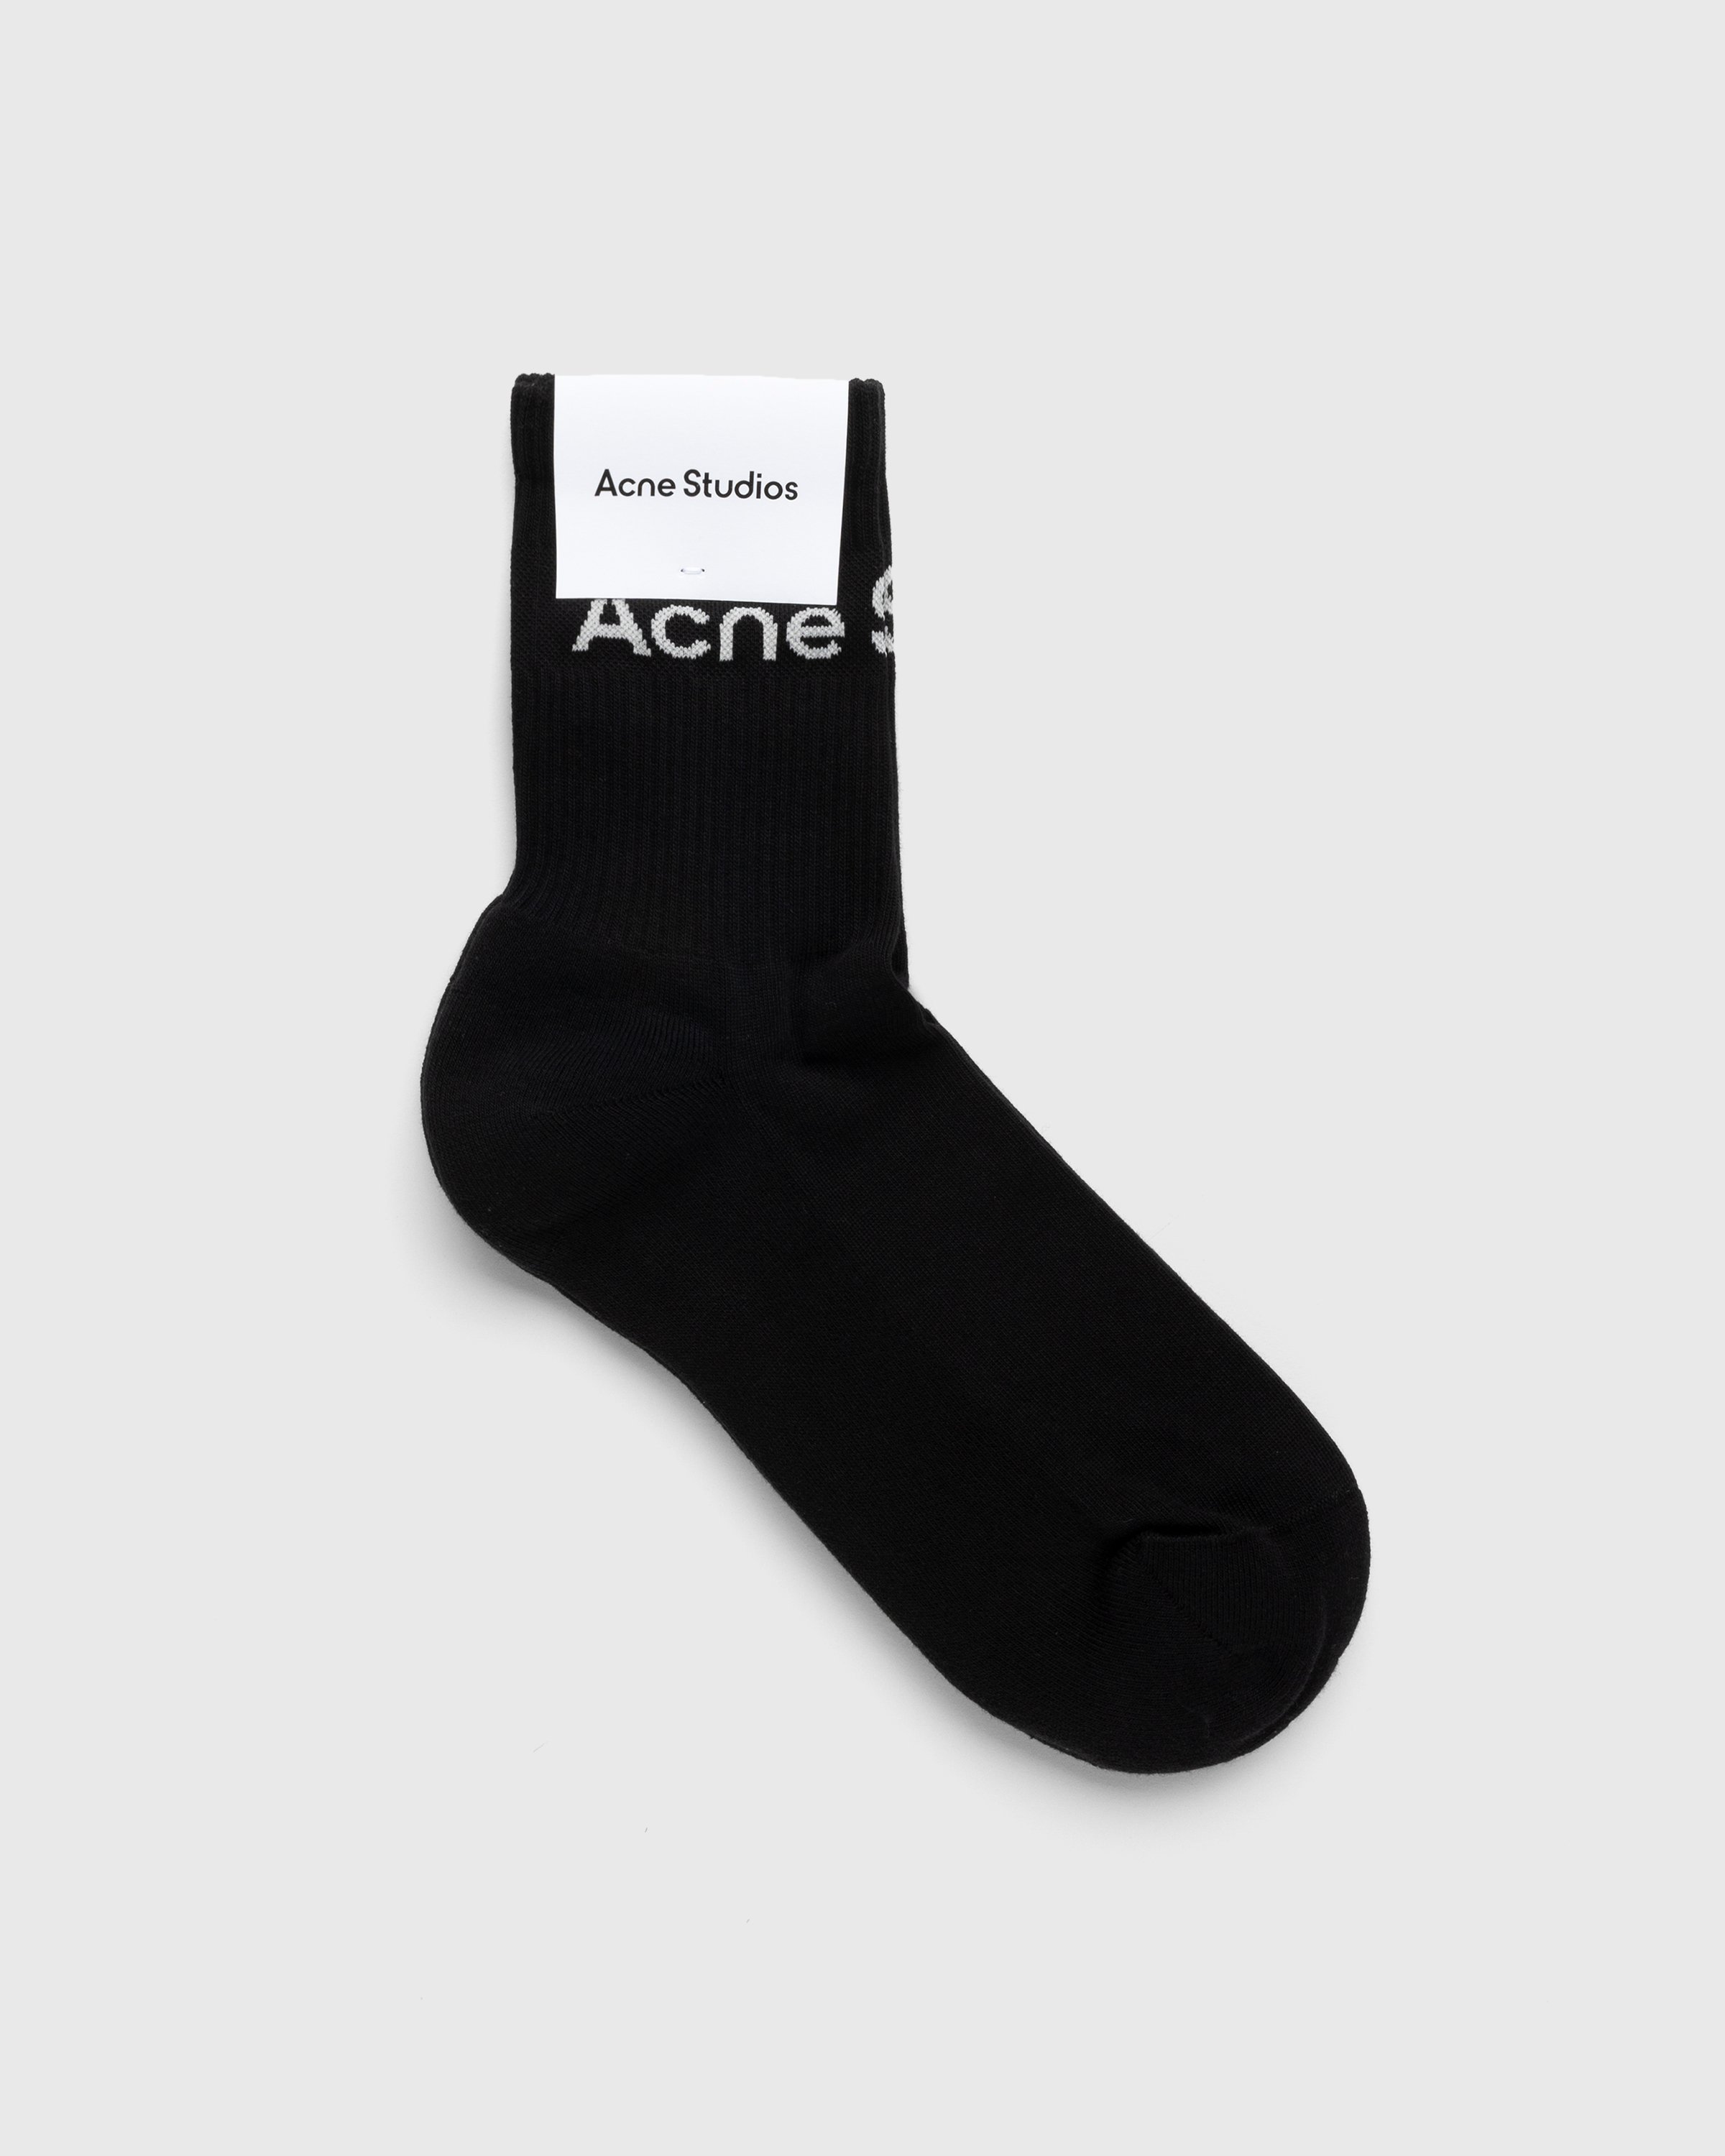 Acne Studios - Ribbed Logo Socks Black - Accessories - Black - Image 1